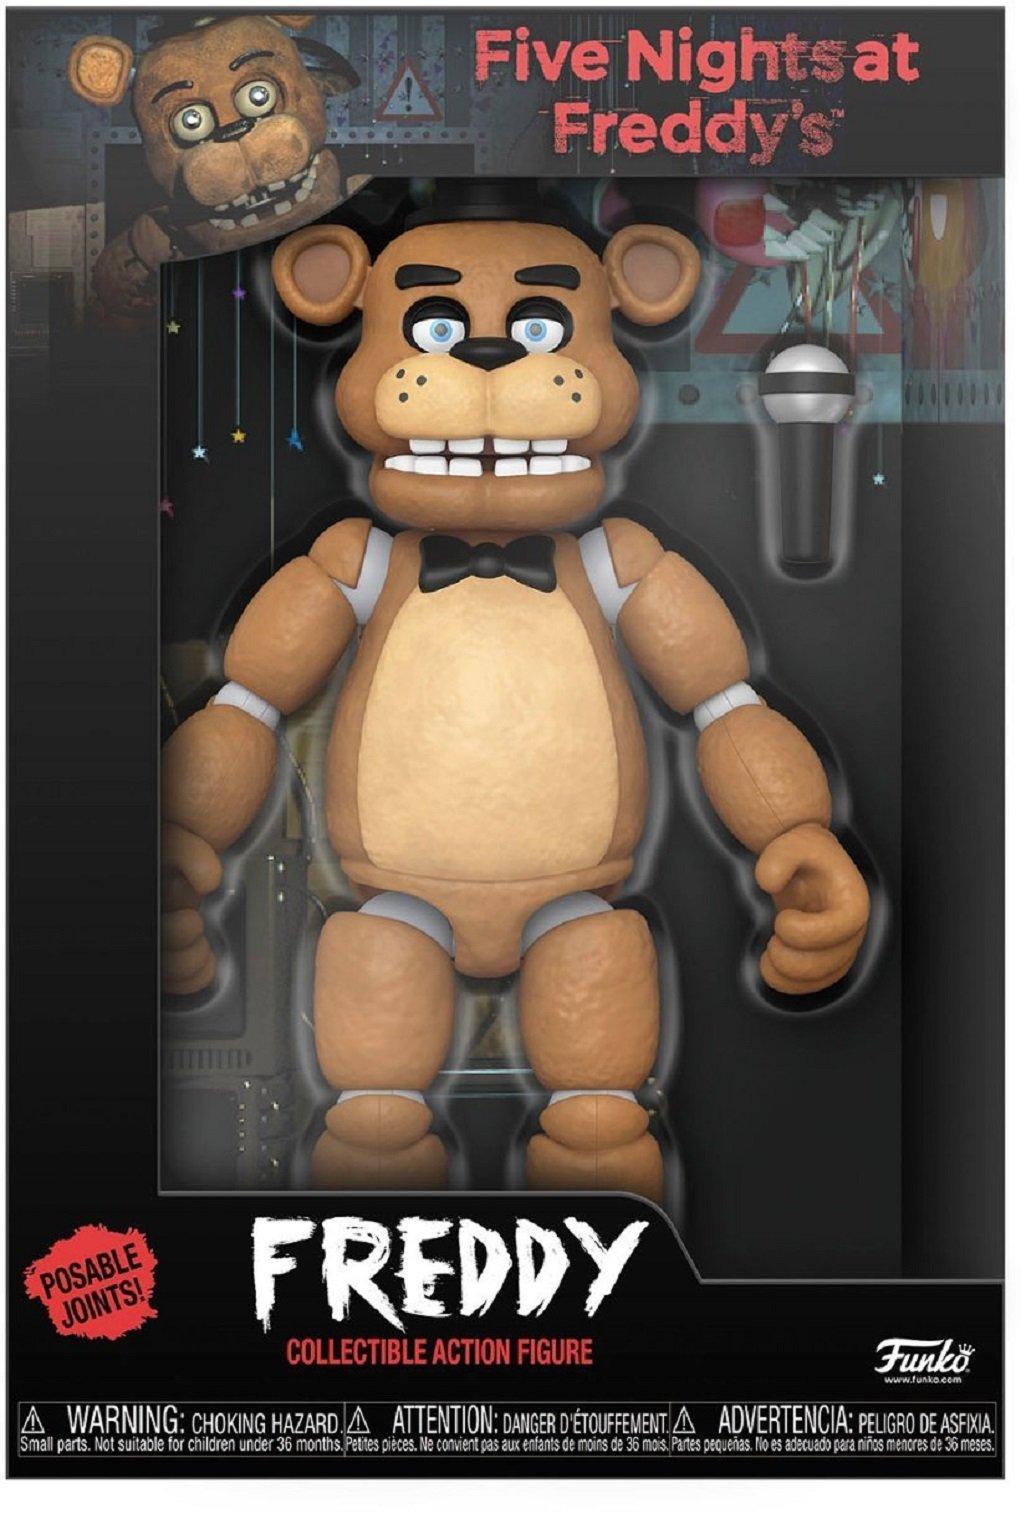 Funko Five Nights at Freddy's - Freddy Fazbear 13.5-in Action Figure